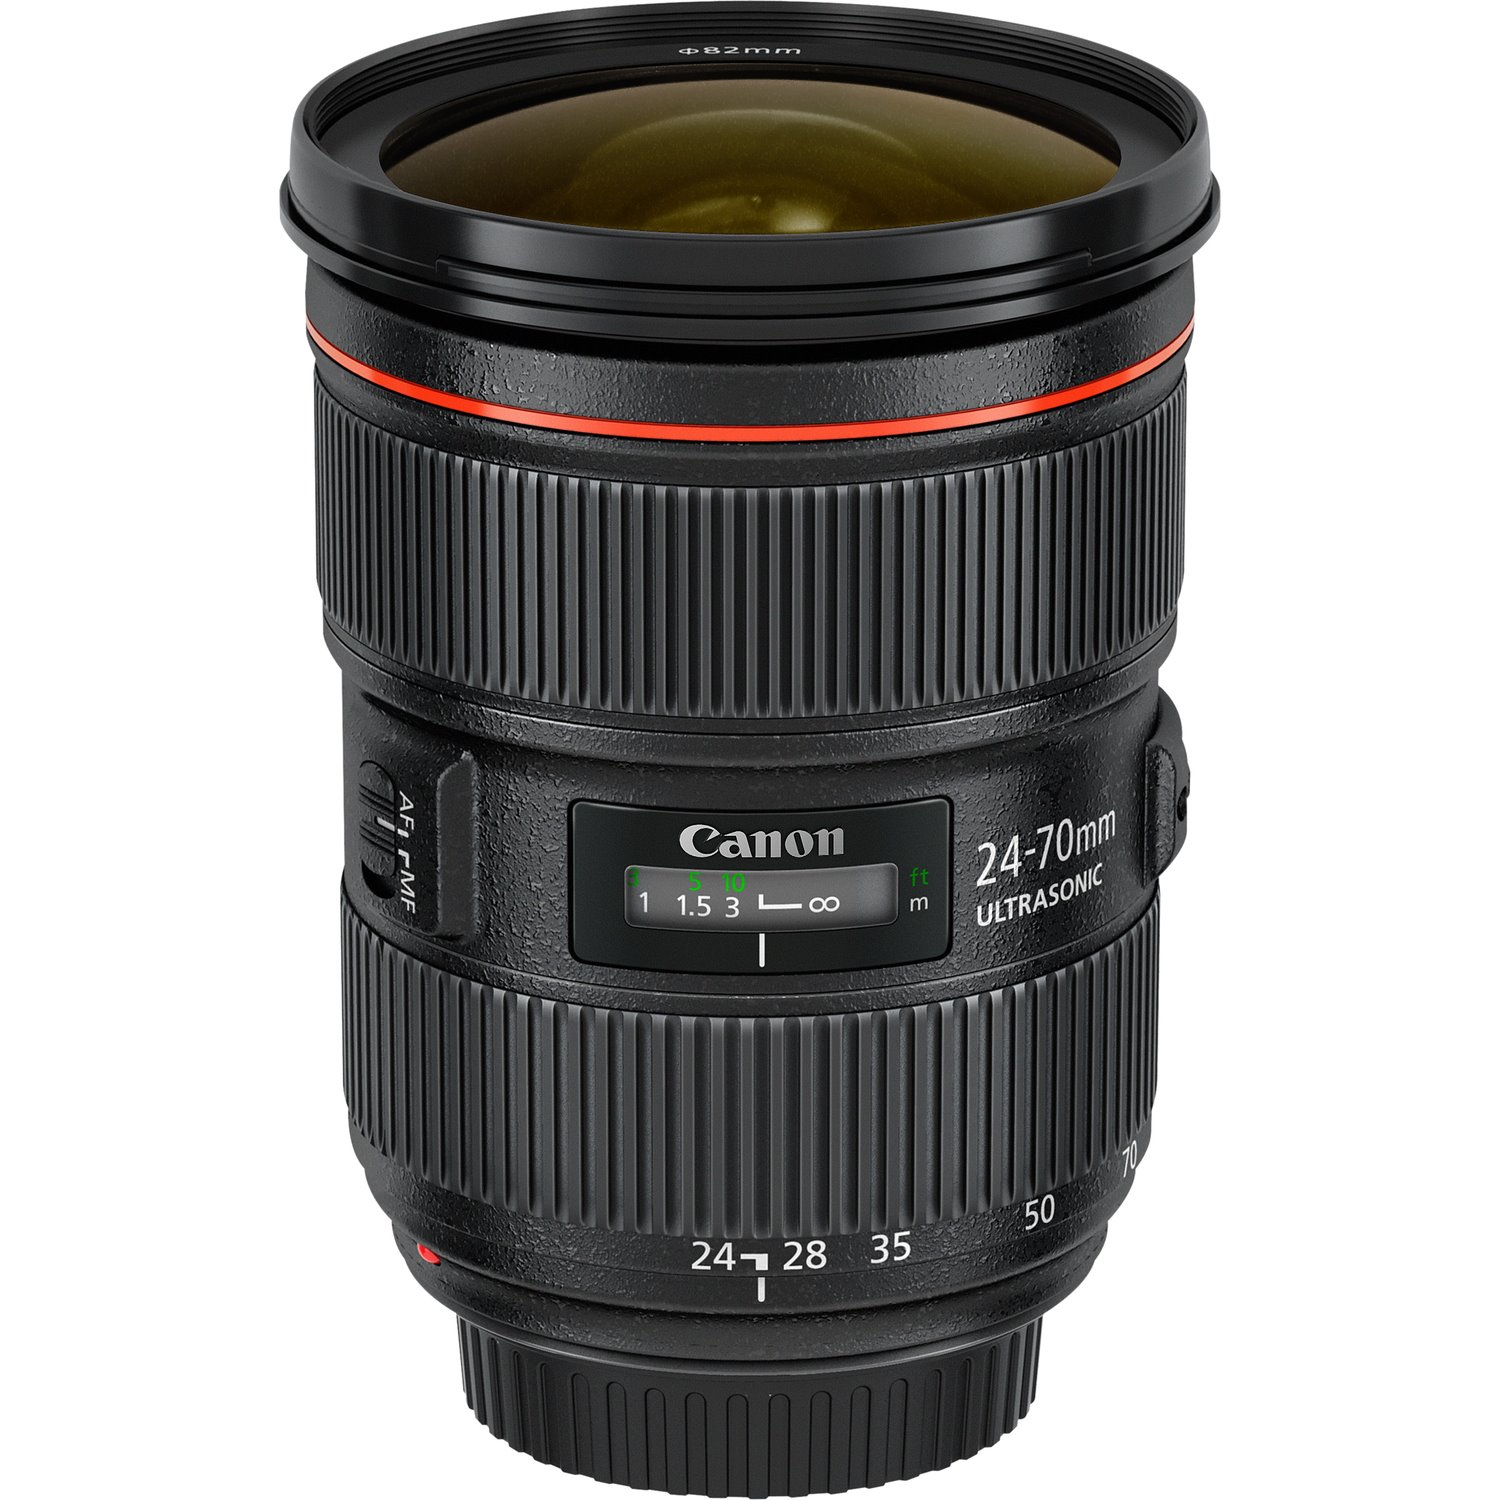 Canon - 24 mm to 70 mm - f/22 - f/2.8 - Zoom Lens for Canon EF/EF-S